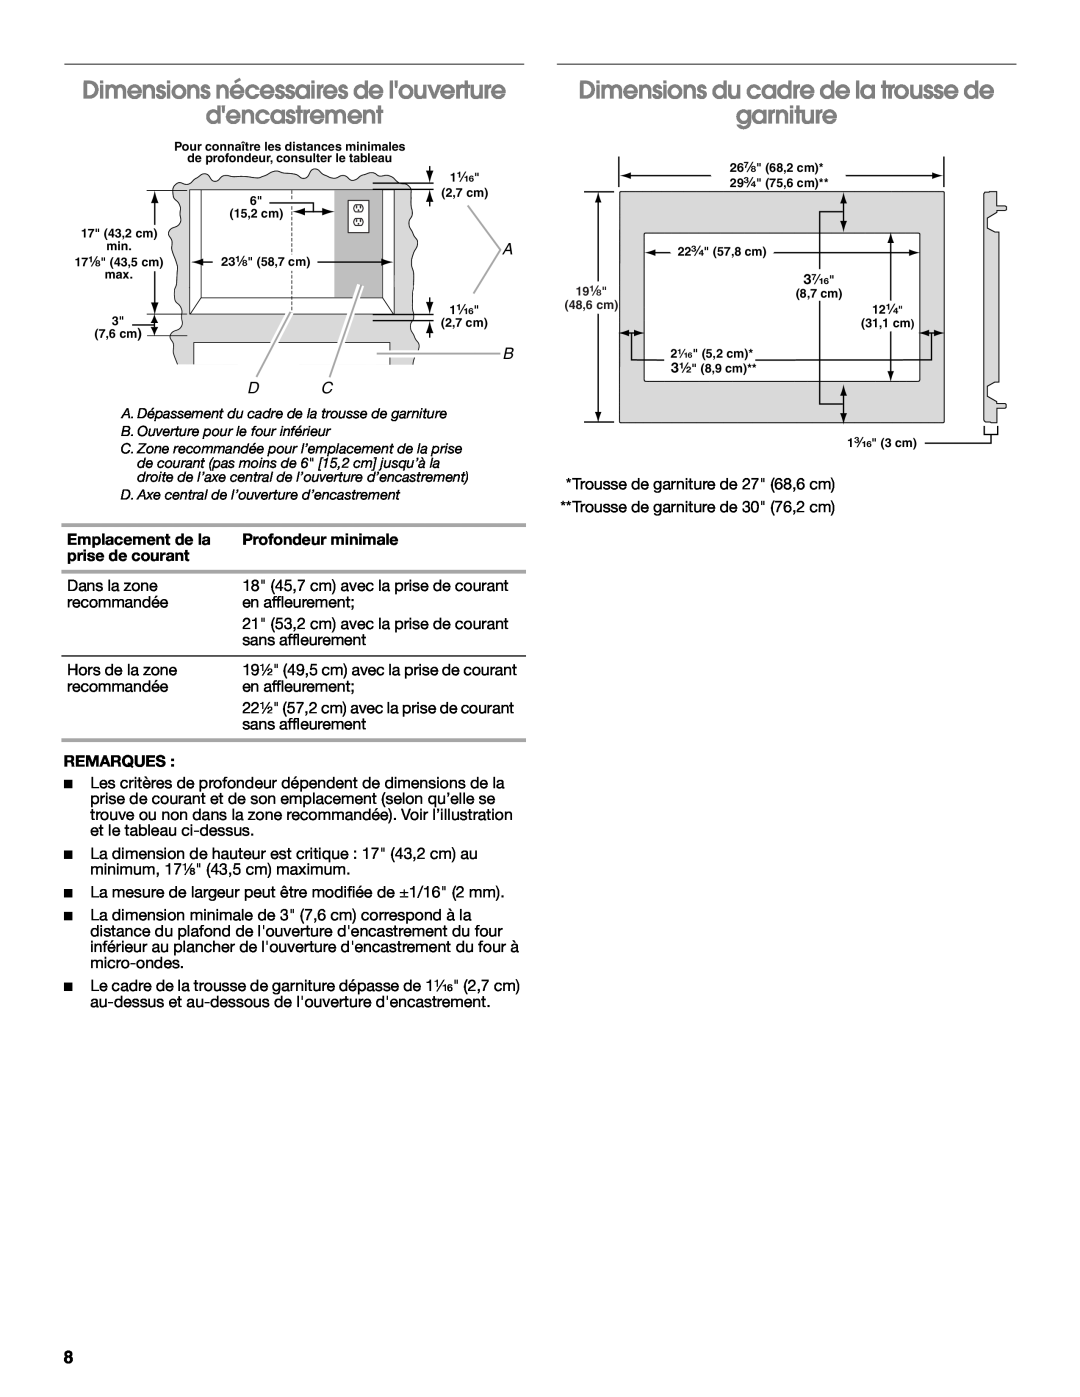 Whirlpool MK2167 Dimensions nécessaires de louverture dencastrement, Dimensions du cadre de la trousse de garniture, B D C 